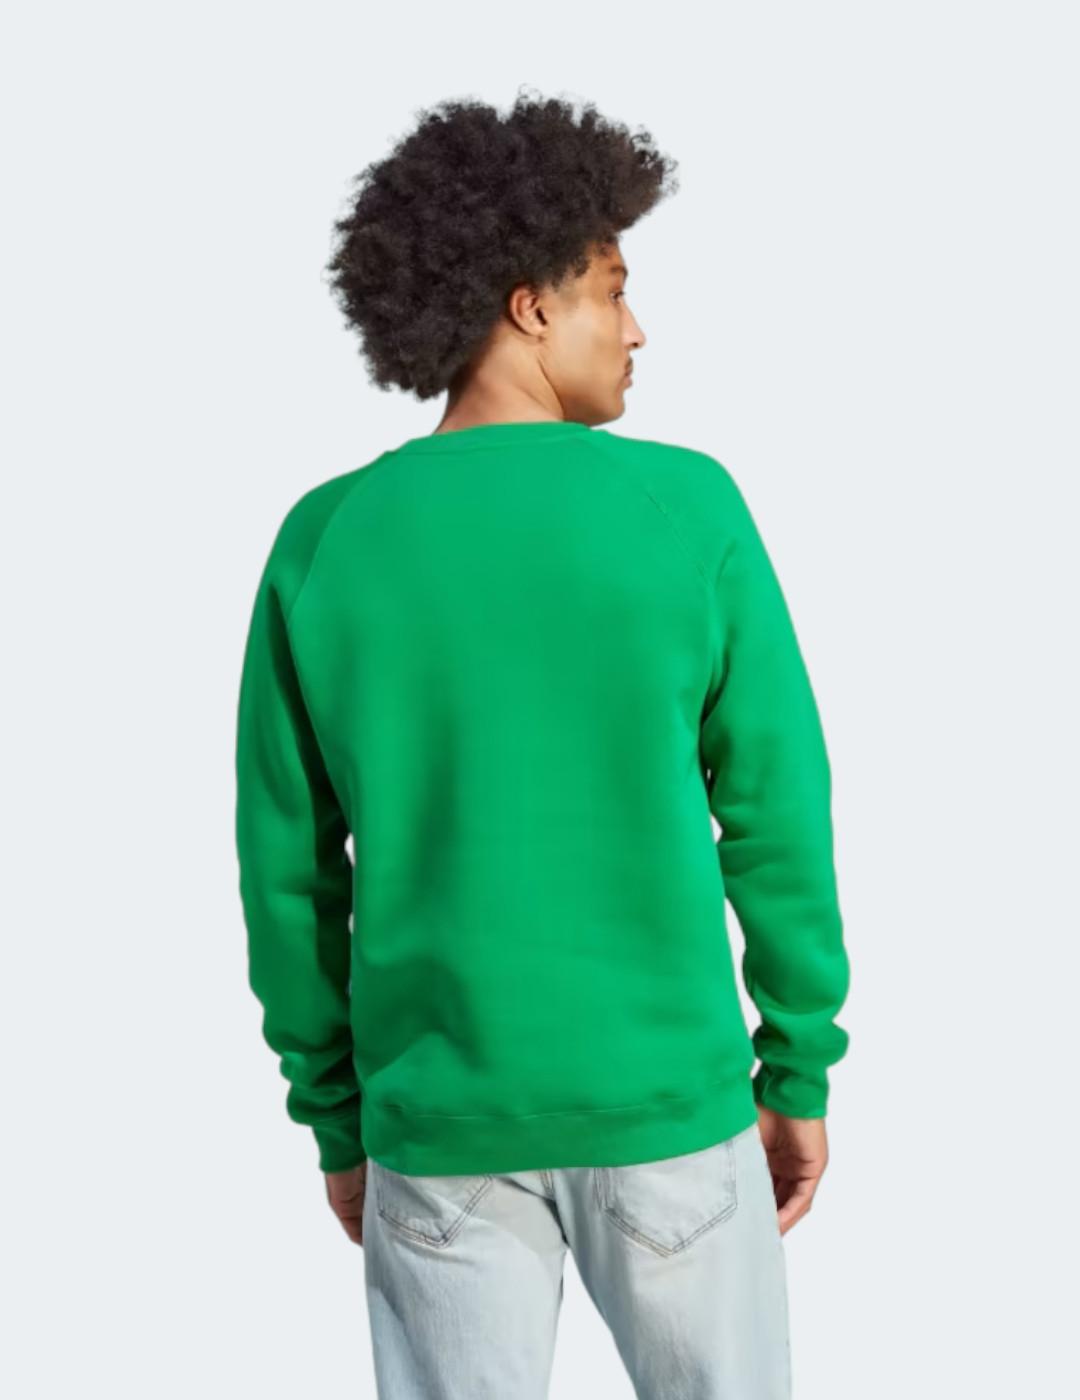 Sudadera Adidas para hombre color verde